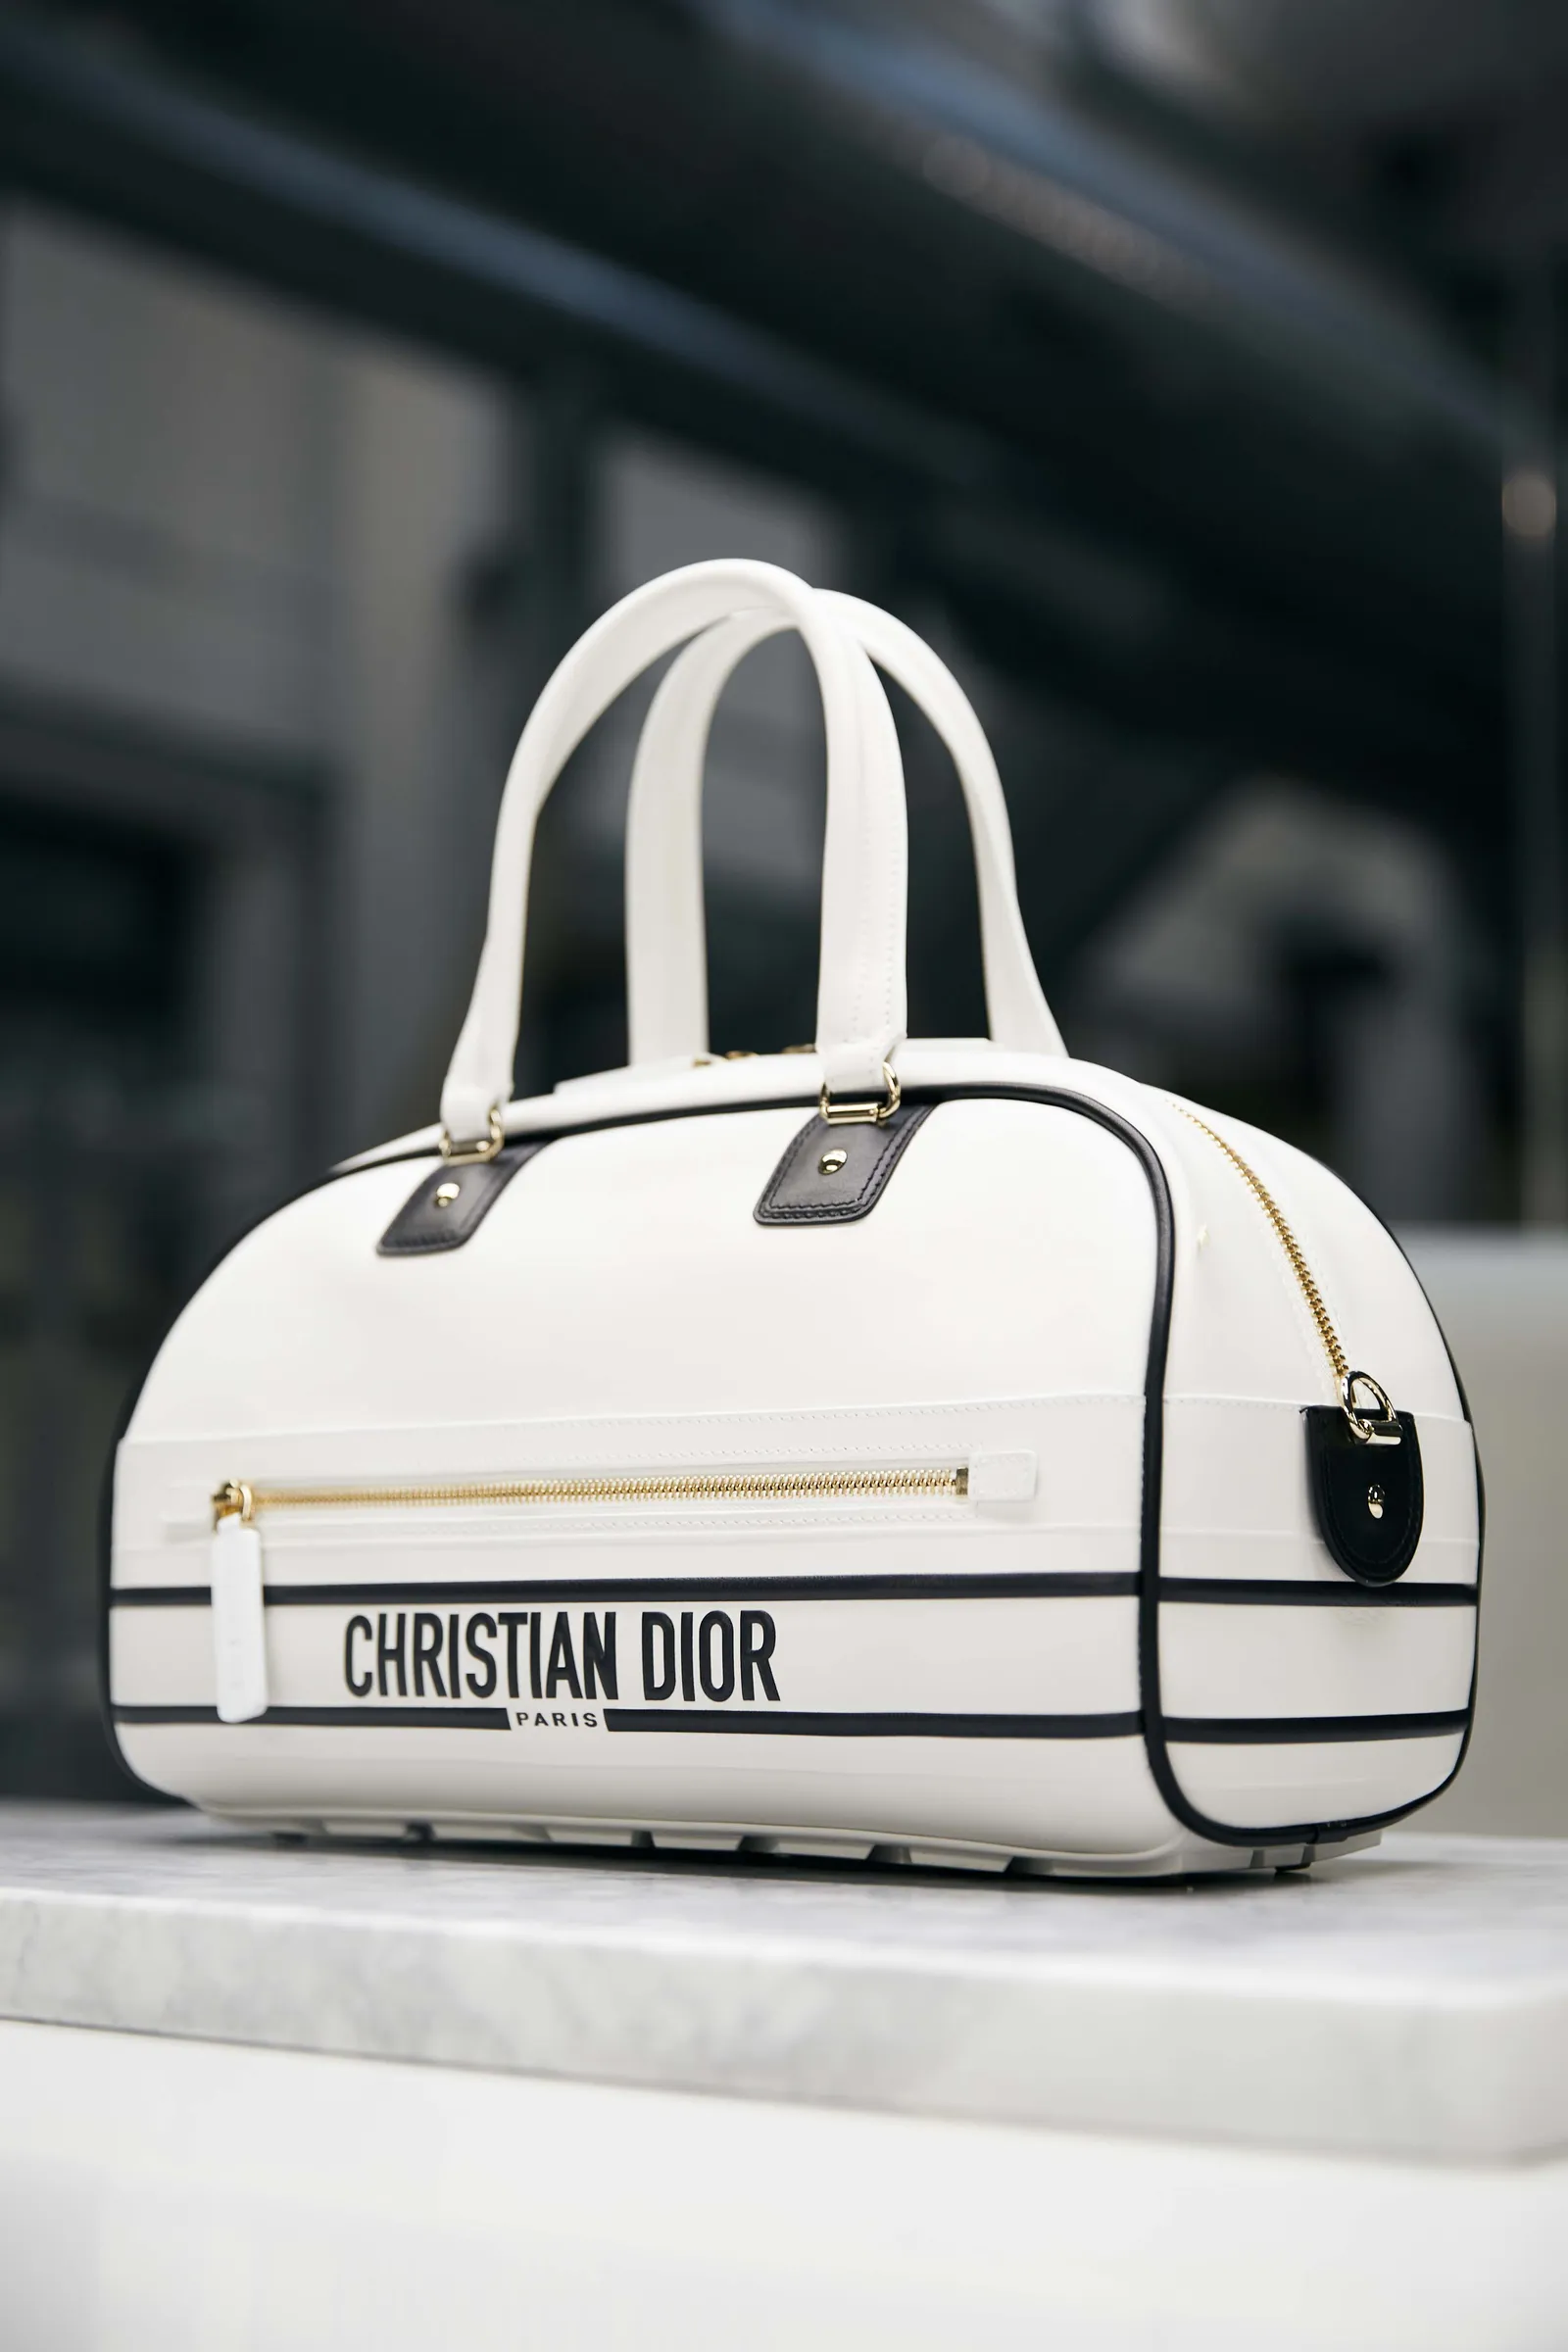 Mengintip Tas Dior Vibe yang Menggabungkan Unsur Sport & Klasik